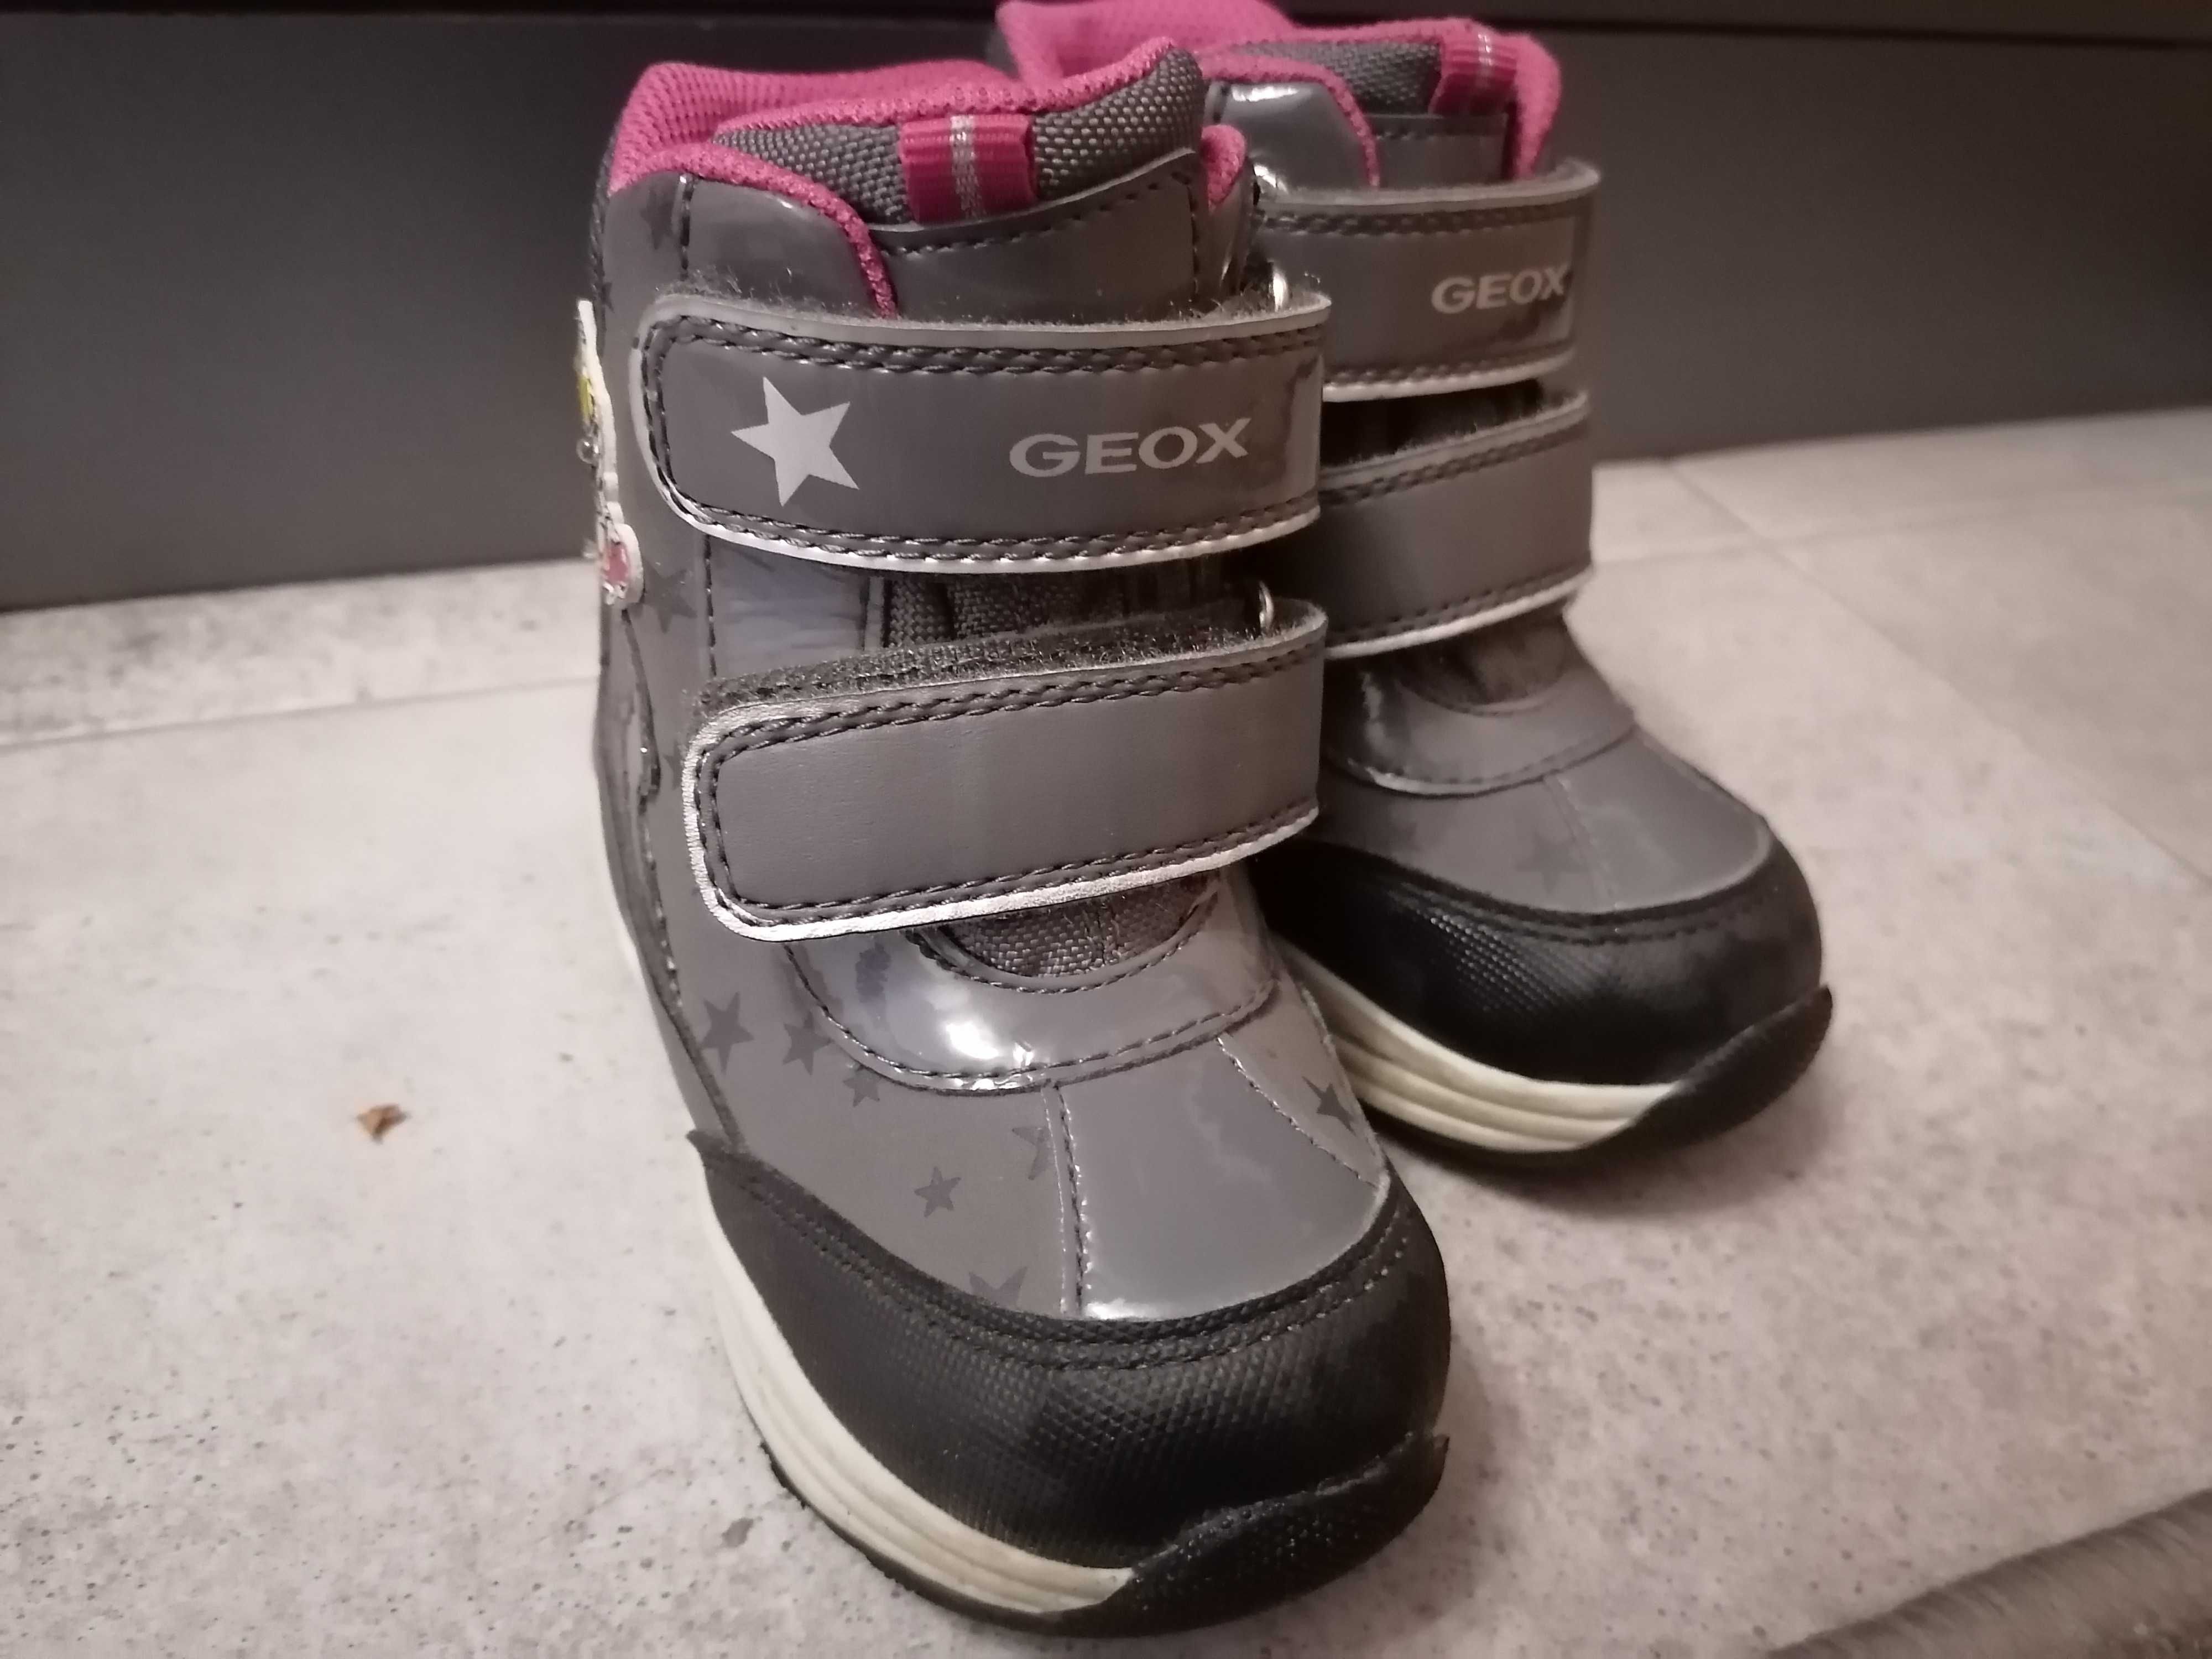 Geox buty zimowe śniegowce dla dziewczynki rozmiar 23